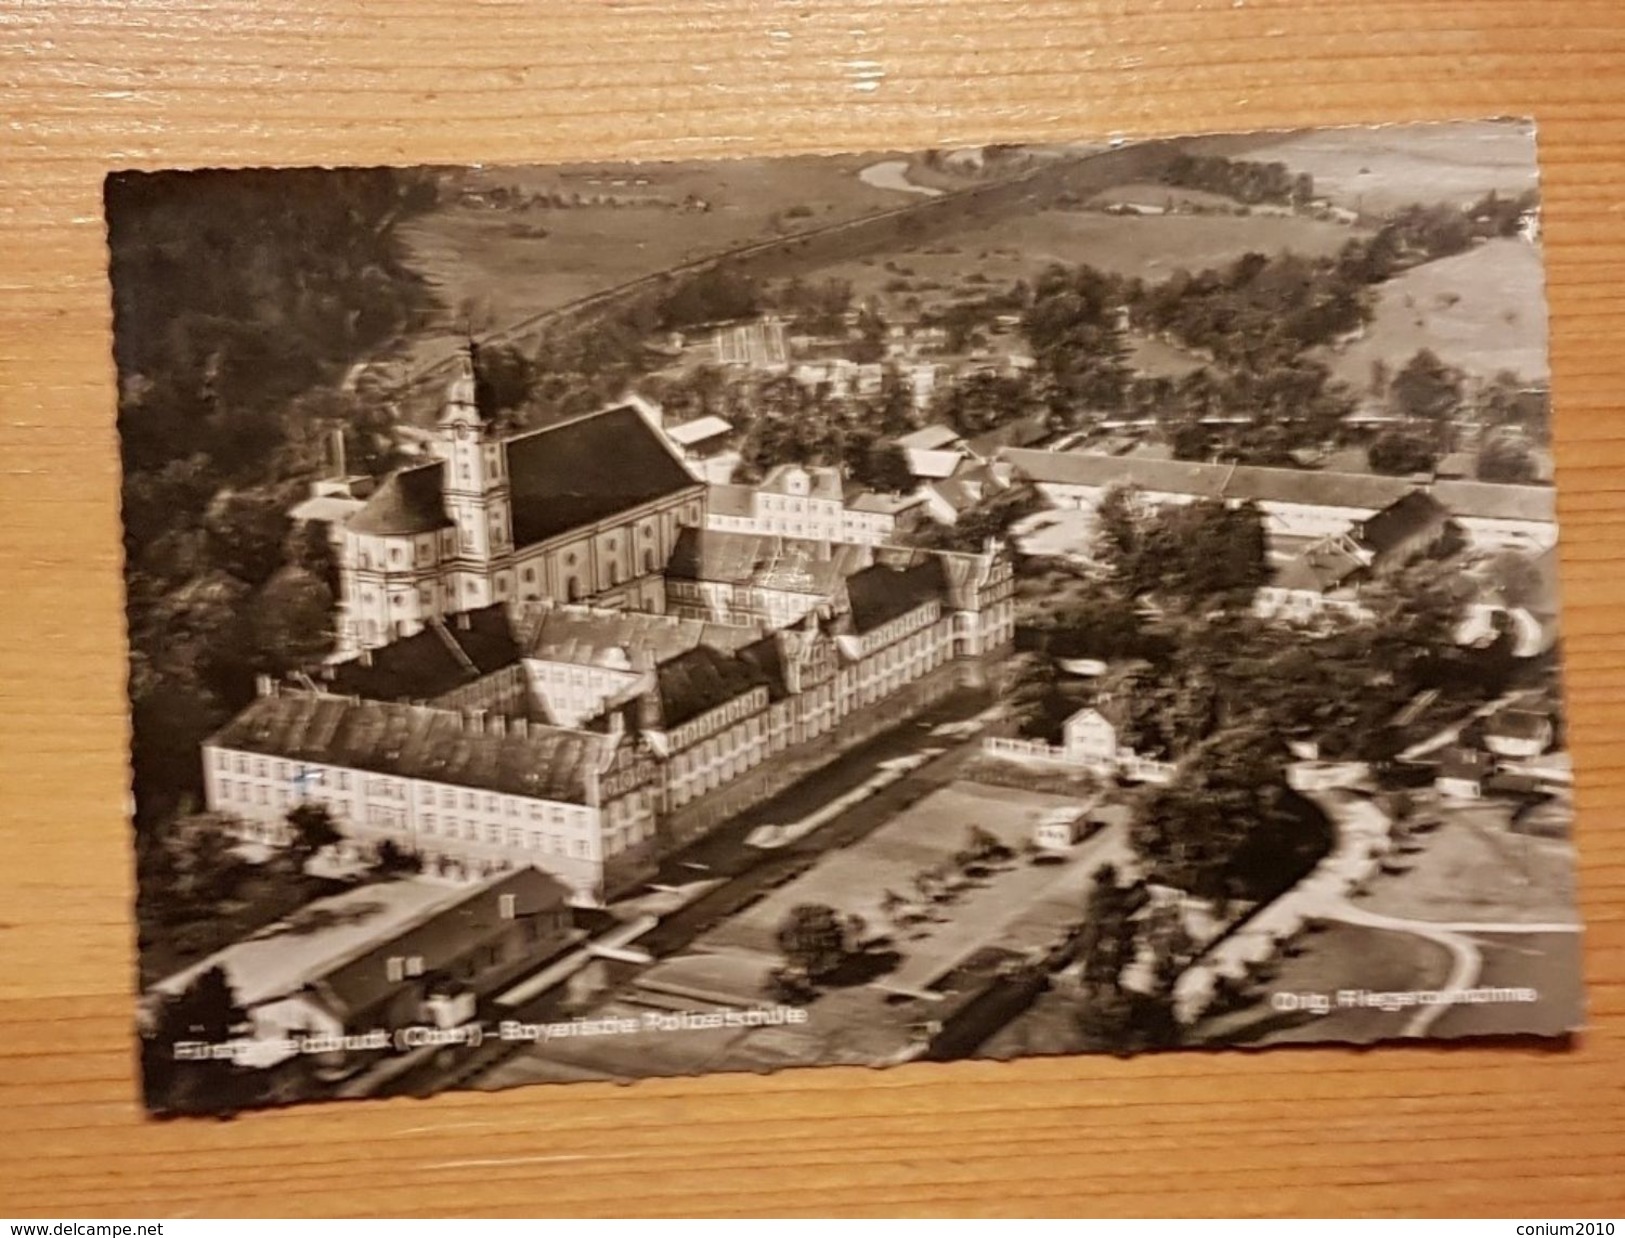 Fürstenfeldbruck, Bayrische Polizeischule, Gelaufen 1957 - Fürstenfeldbruck